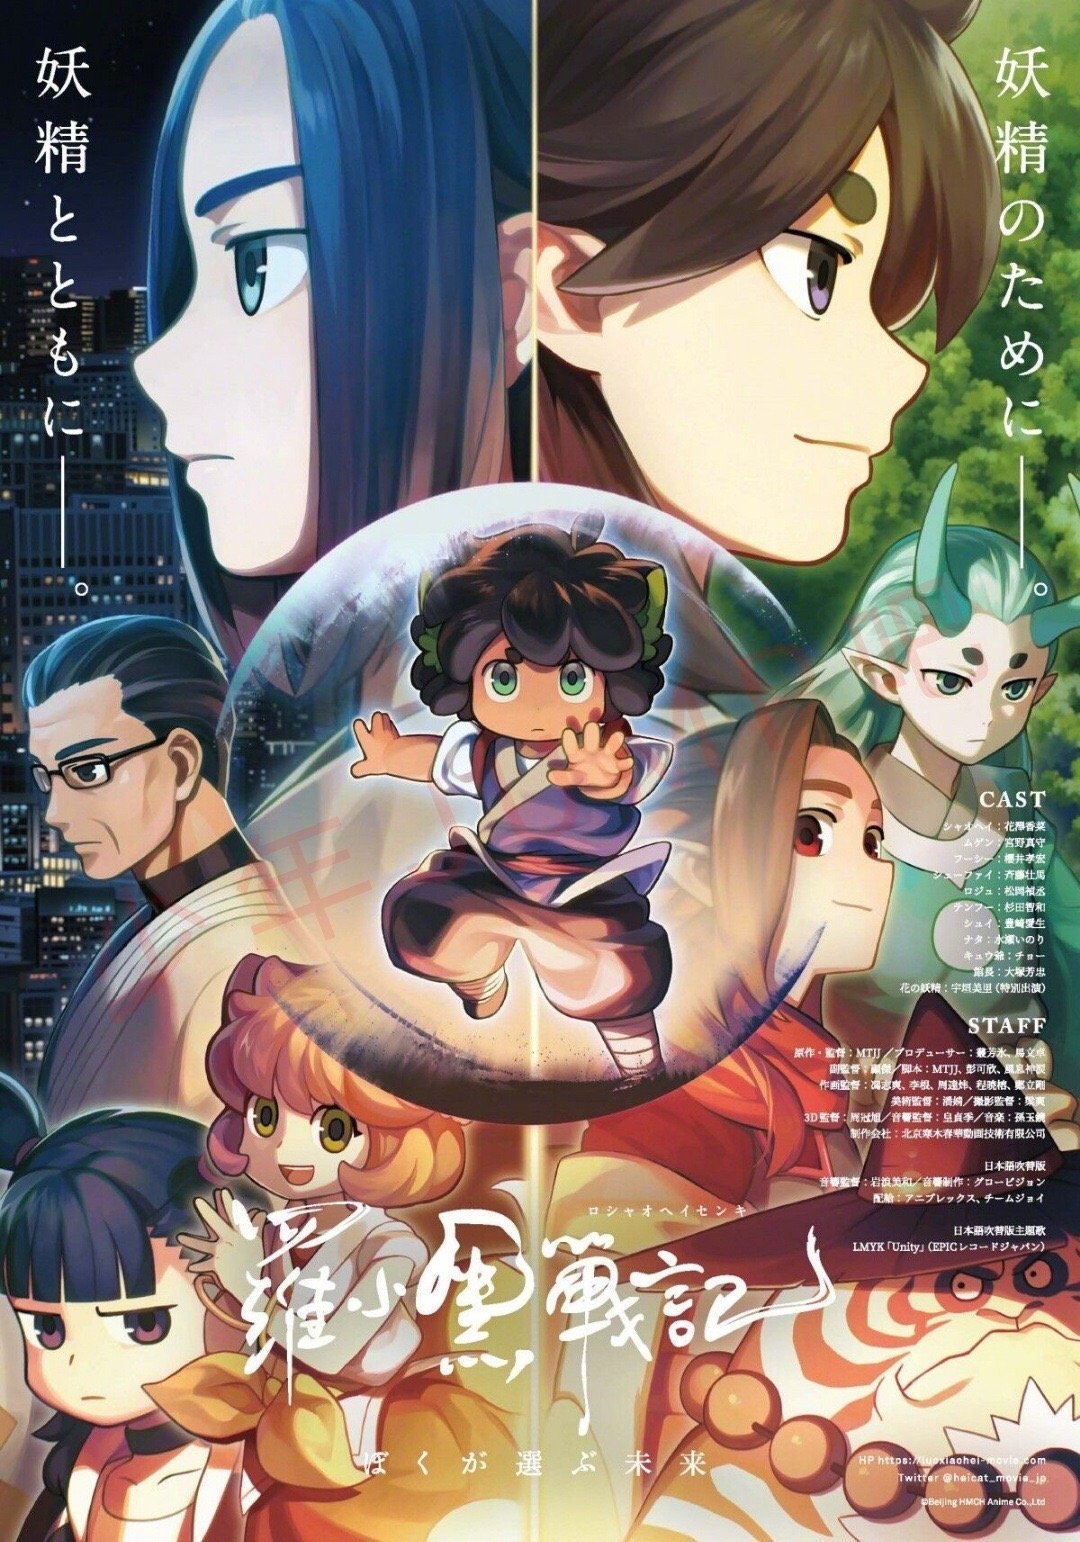 绅士社动画电影《罗小黑战记》日语吹替版正式预告公开，11月7日日本上映